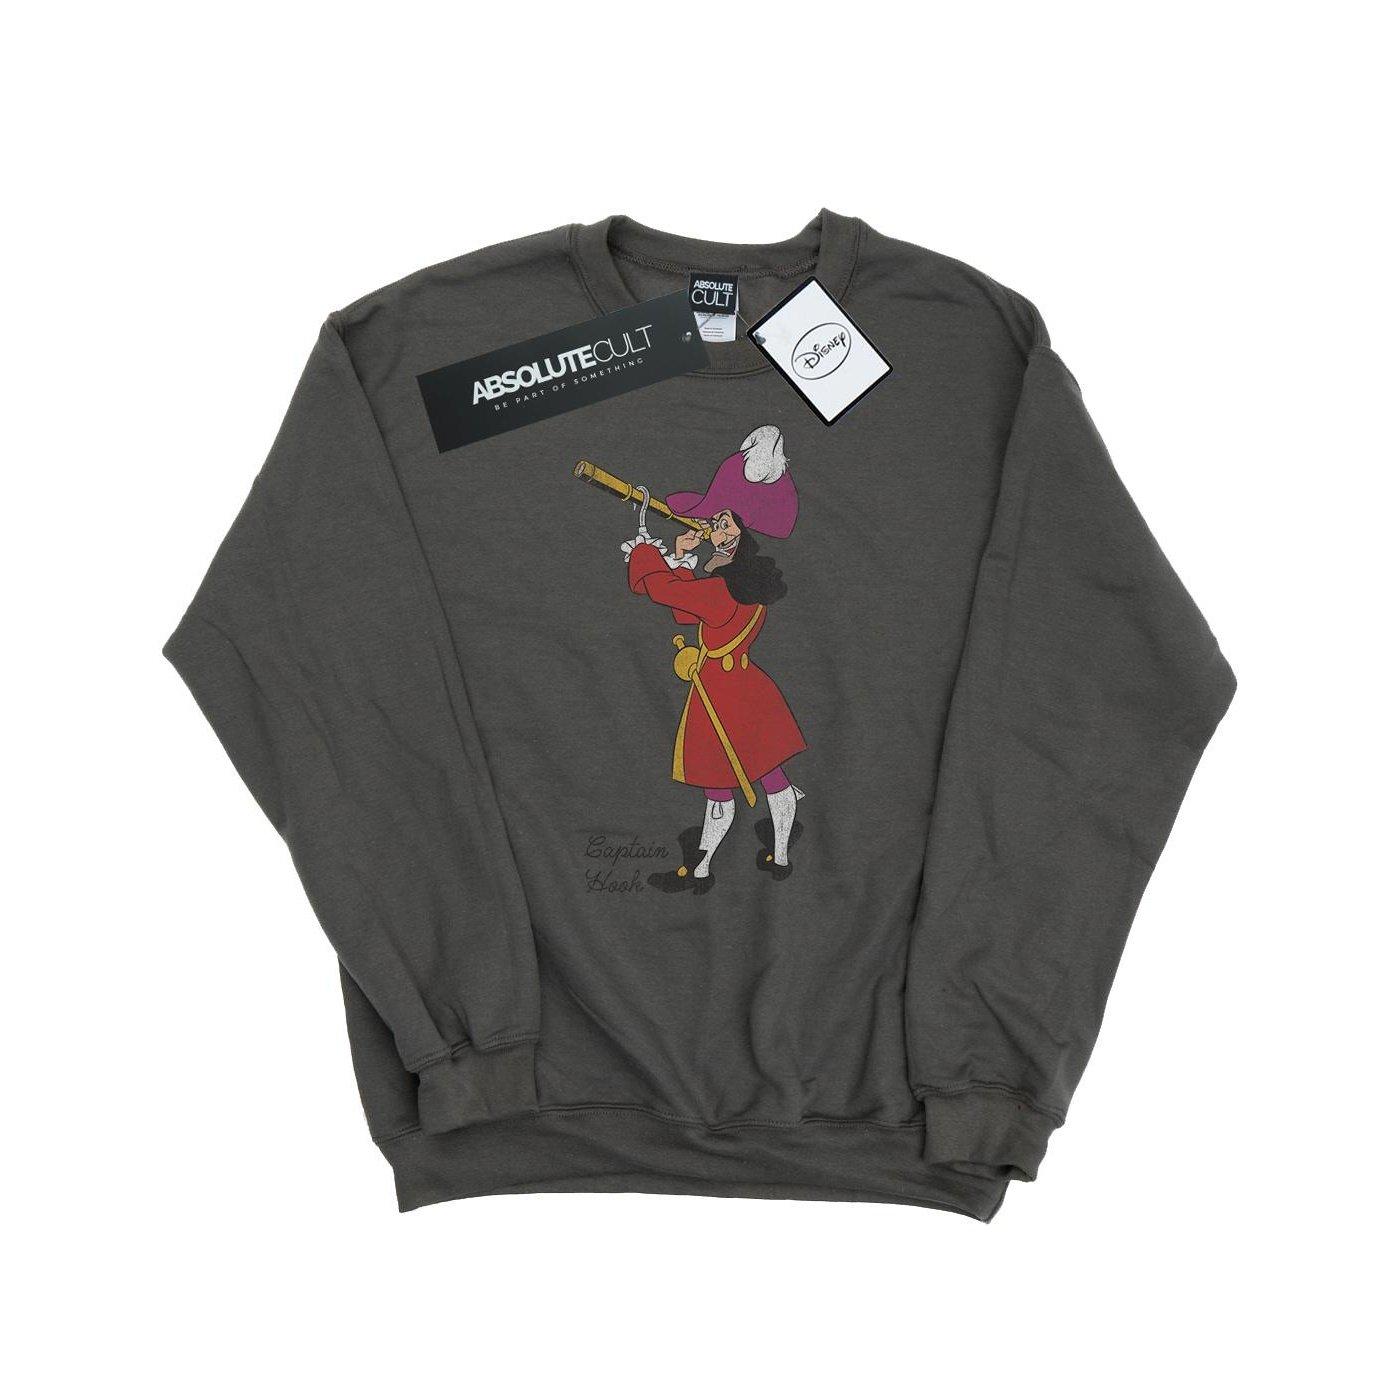 Classic Sweatshirt Herren Charcoal Black L von Peter Pan